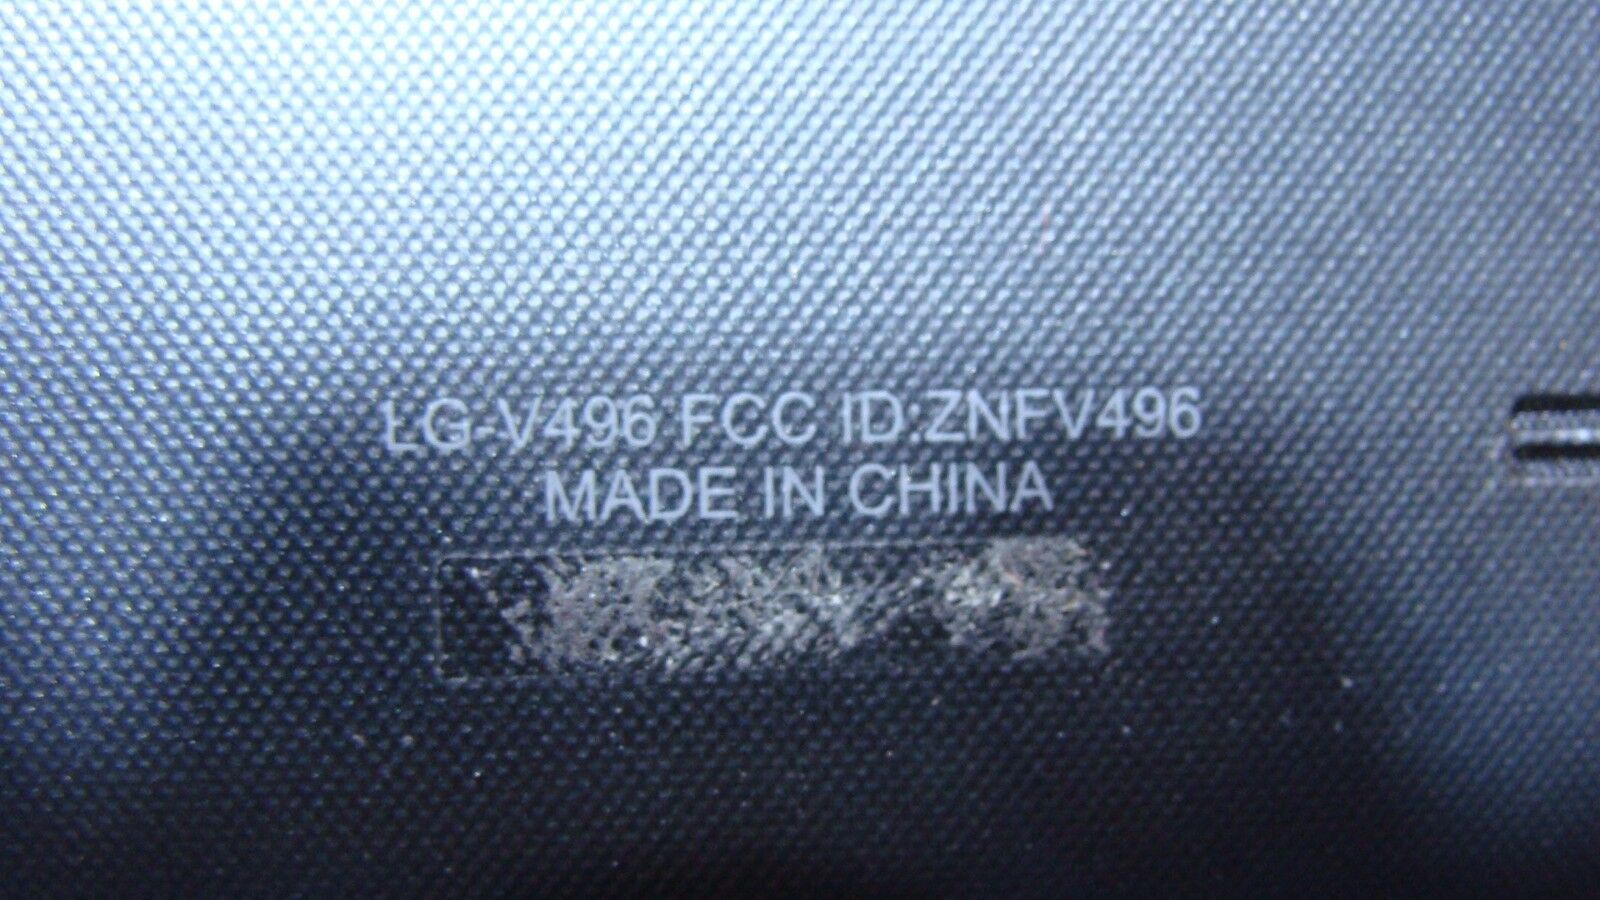 LG G Pad V496 8